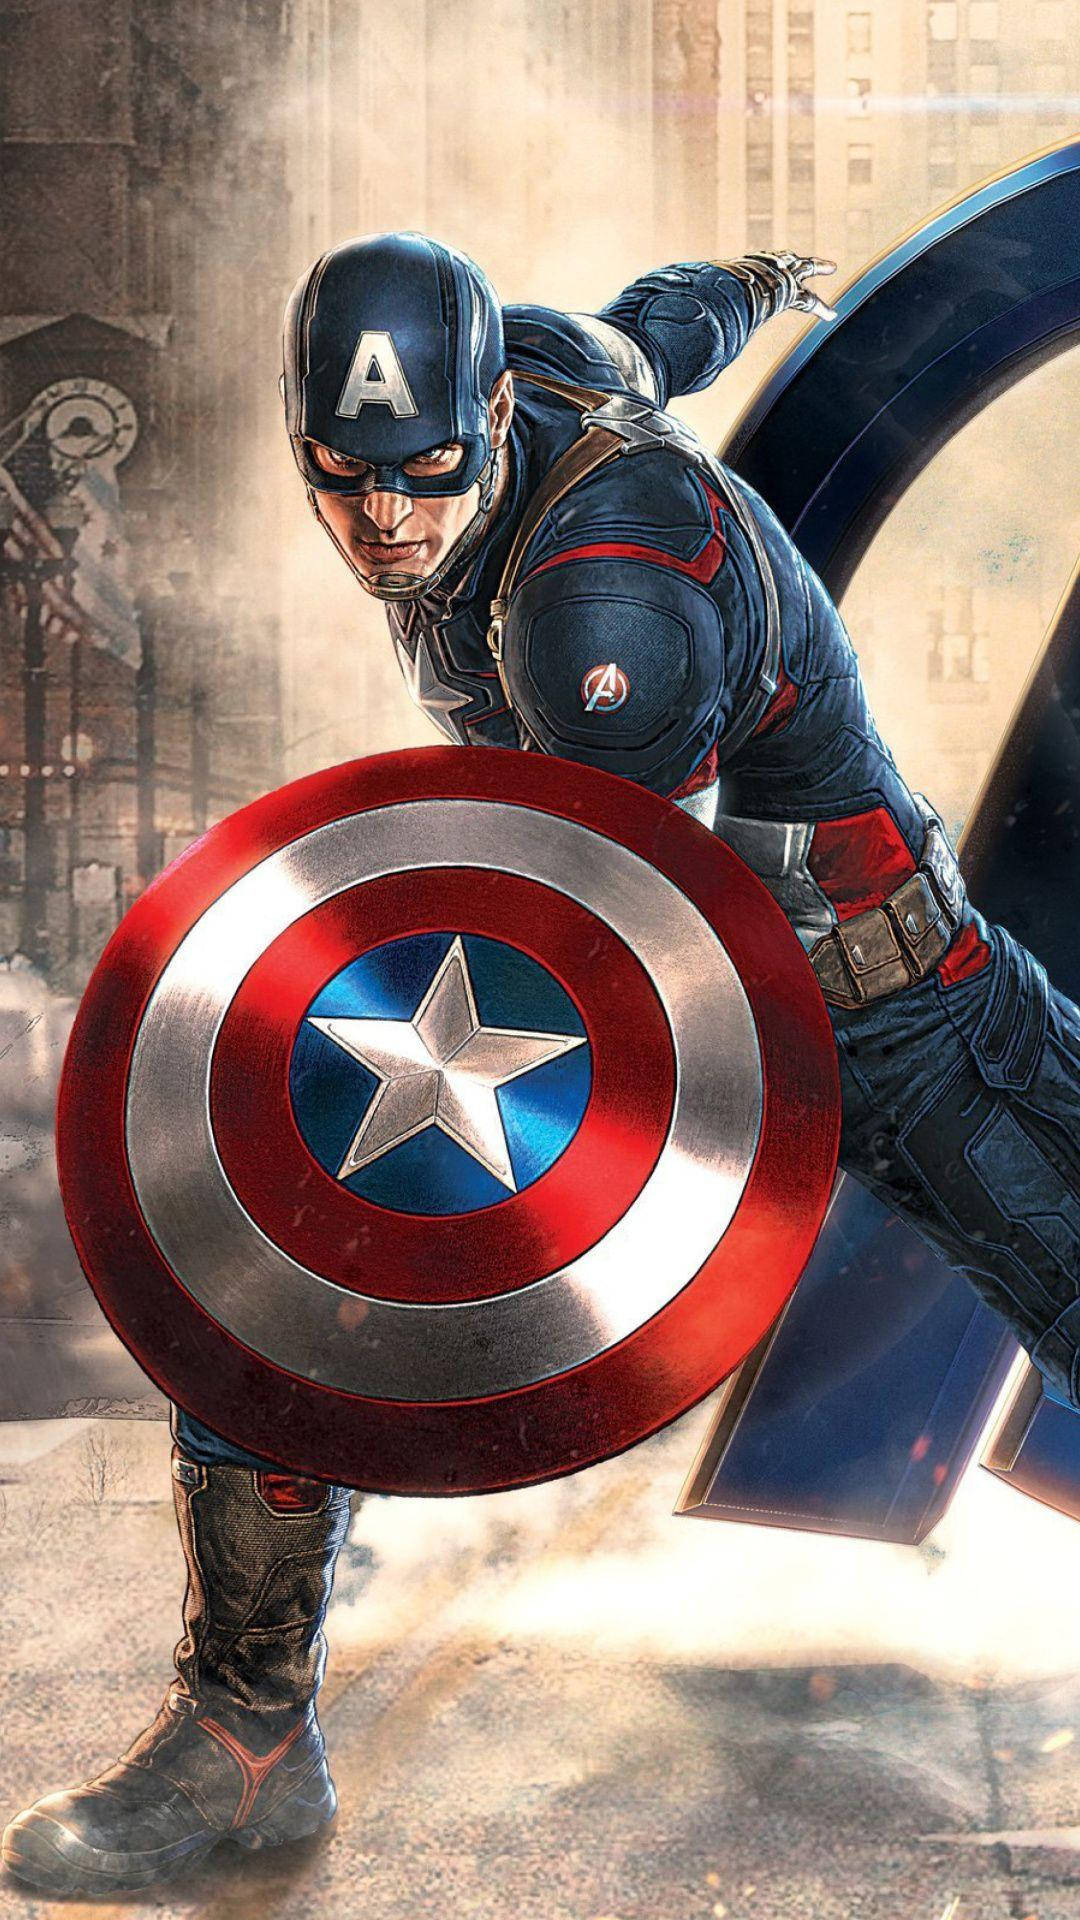 Tapetmed Digital Konst Av Captain America För Iphone. Wallpaper